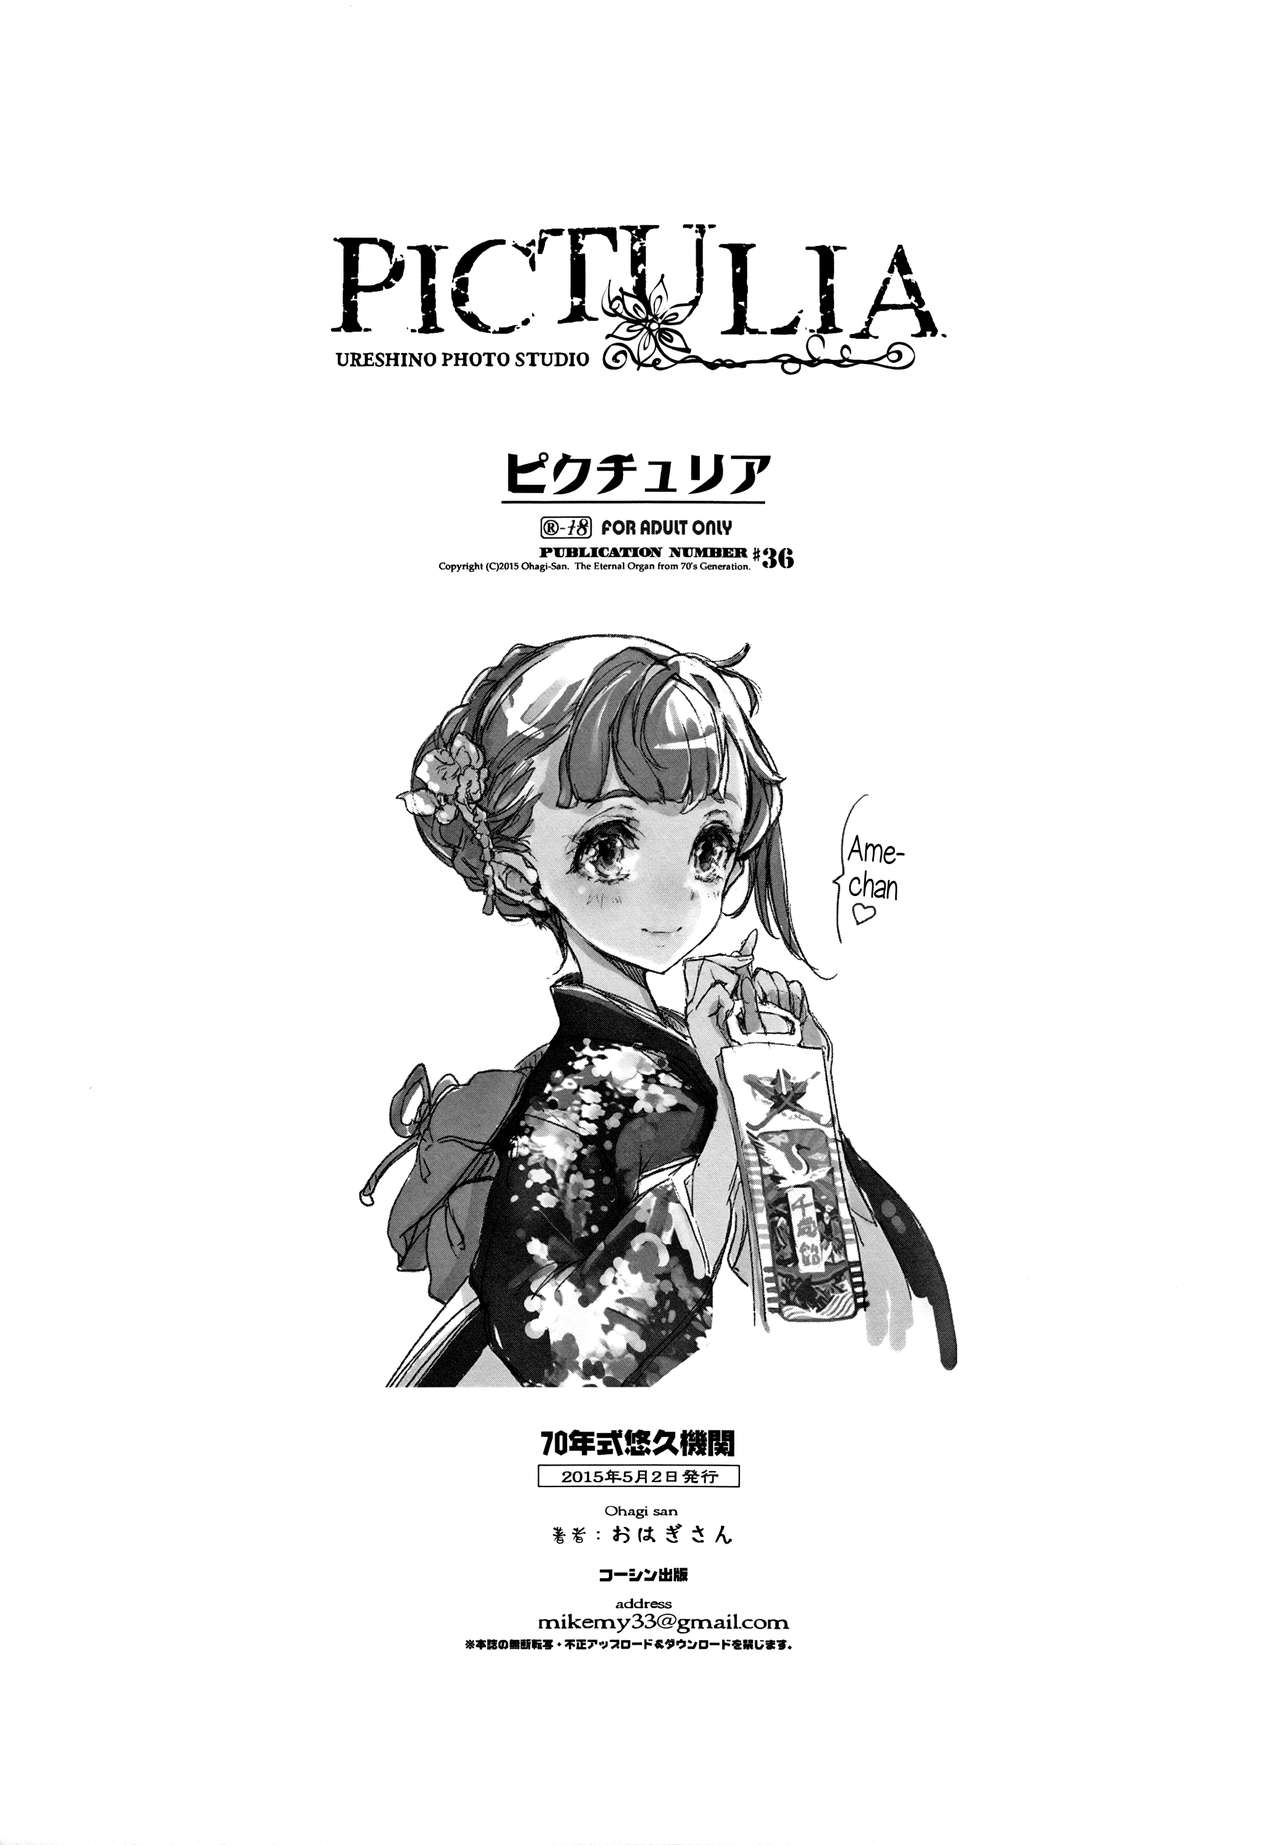 (COMIC1☆9) [70年式悠久機関 (おはぎさん)] pictulia + 4Pリーフレット [英訳]